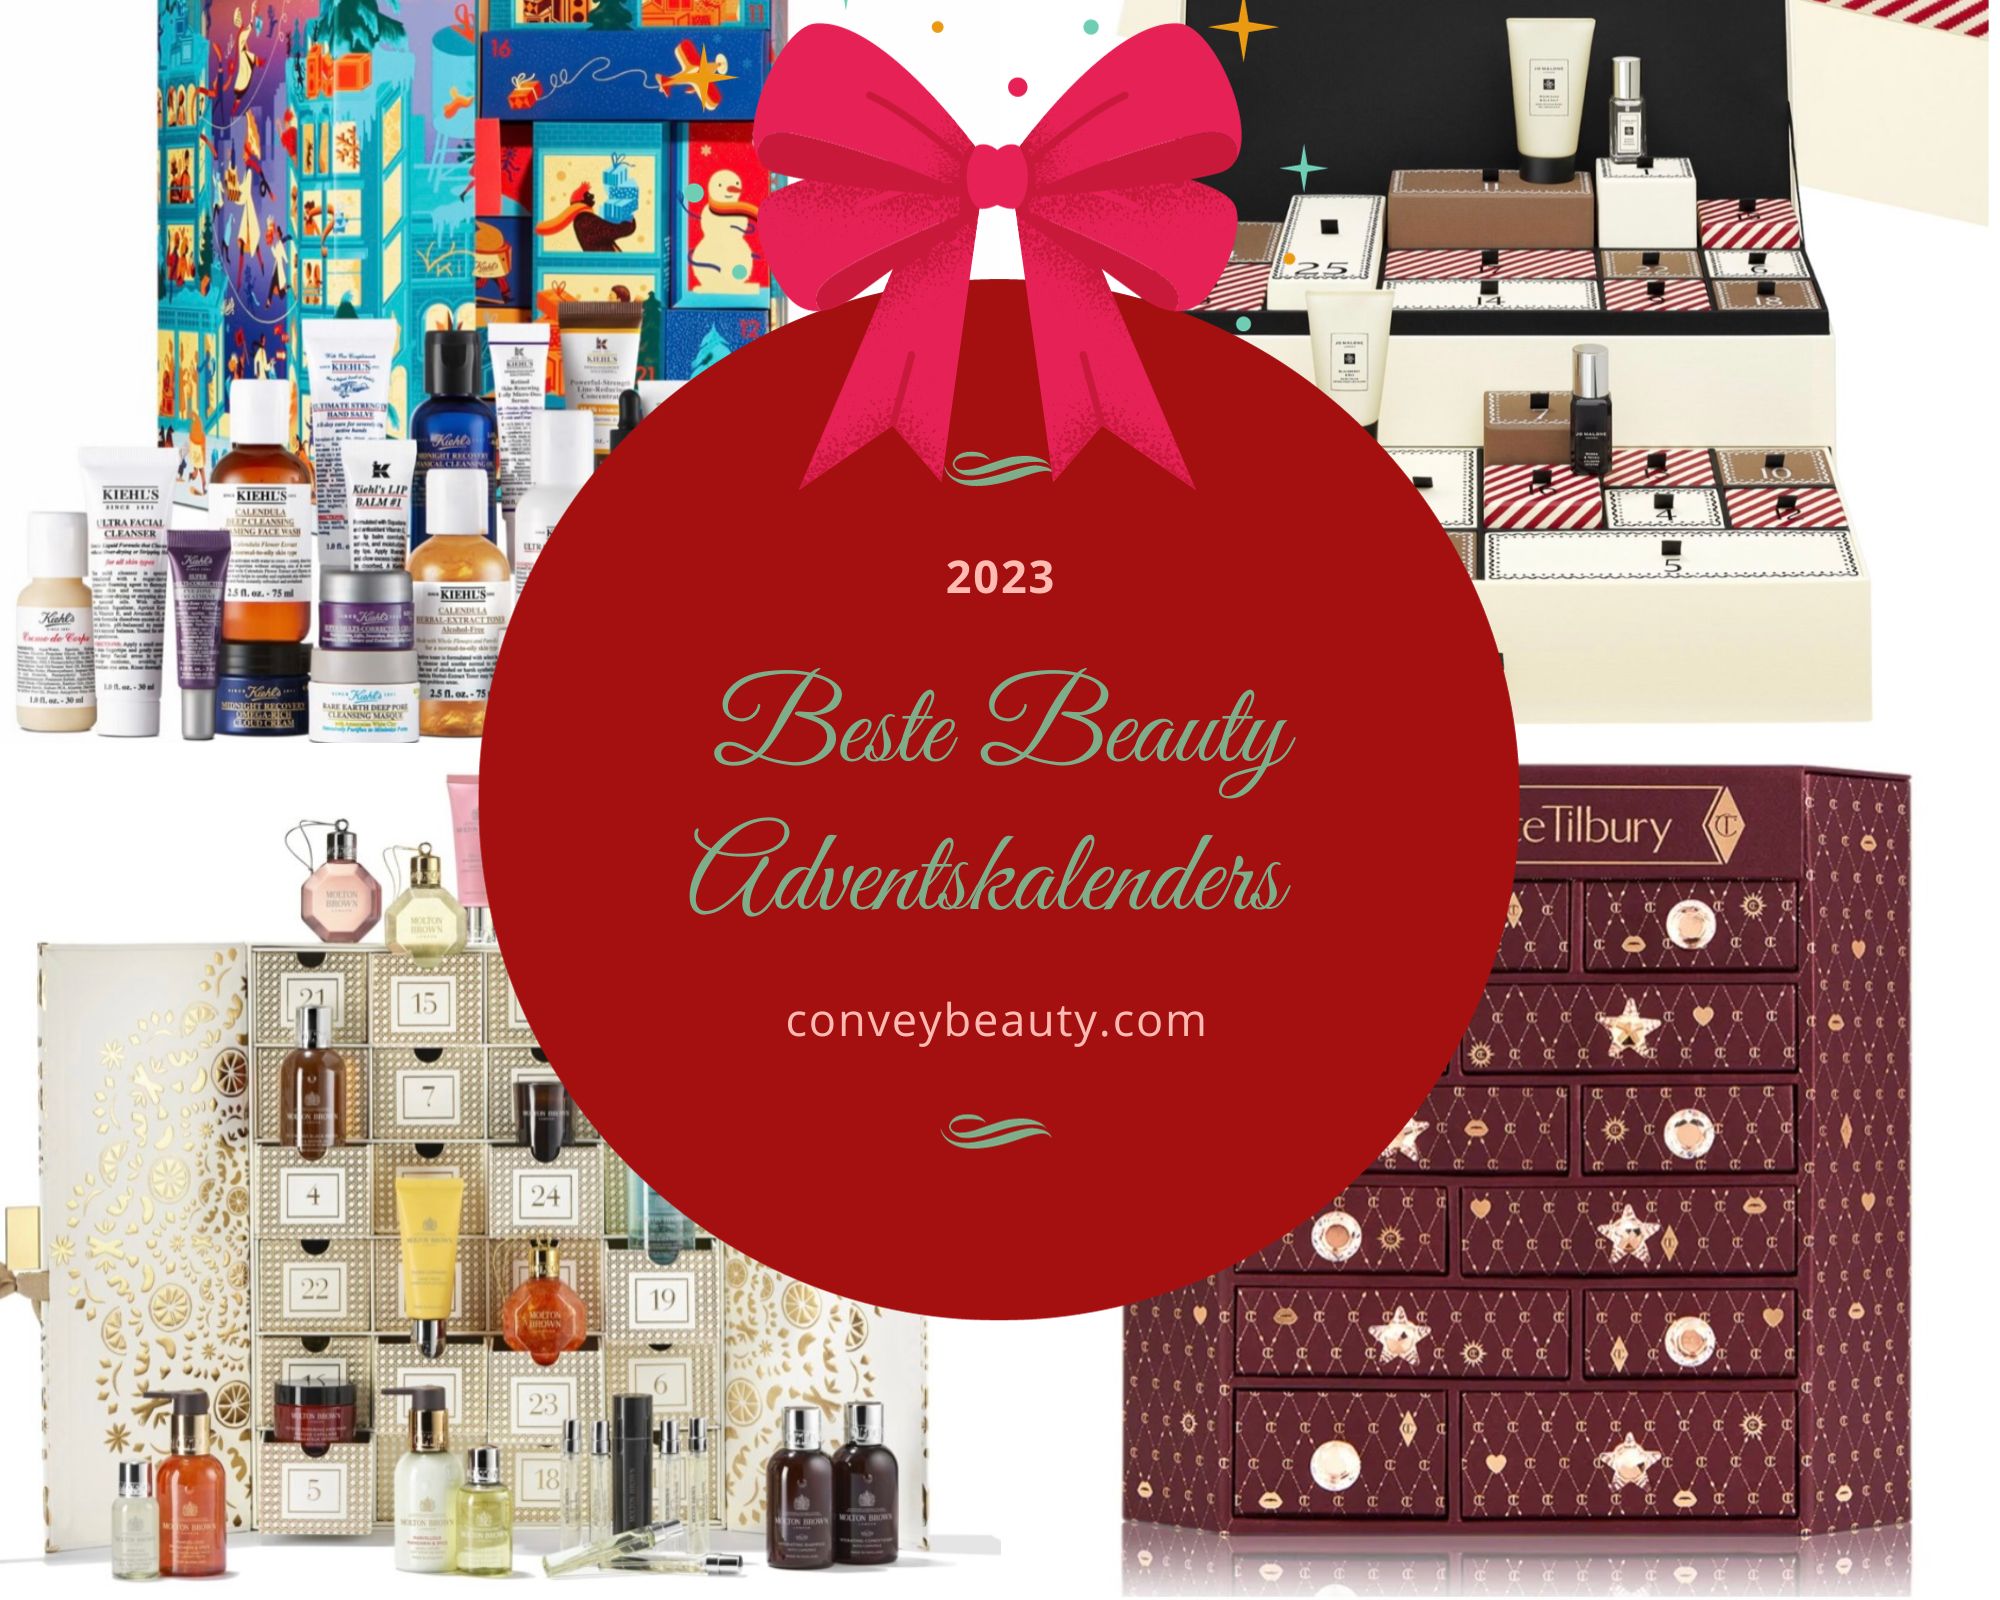 Beste Beauty Adventskalenders 2023 – Welke kun je nu kopen?